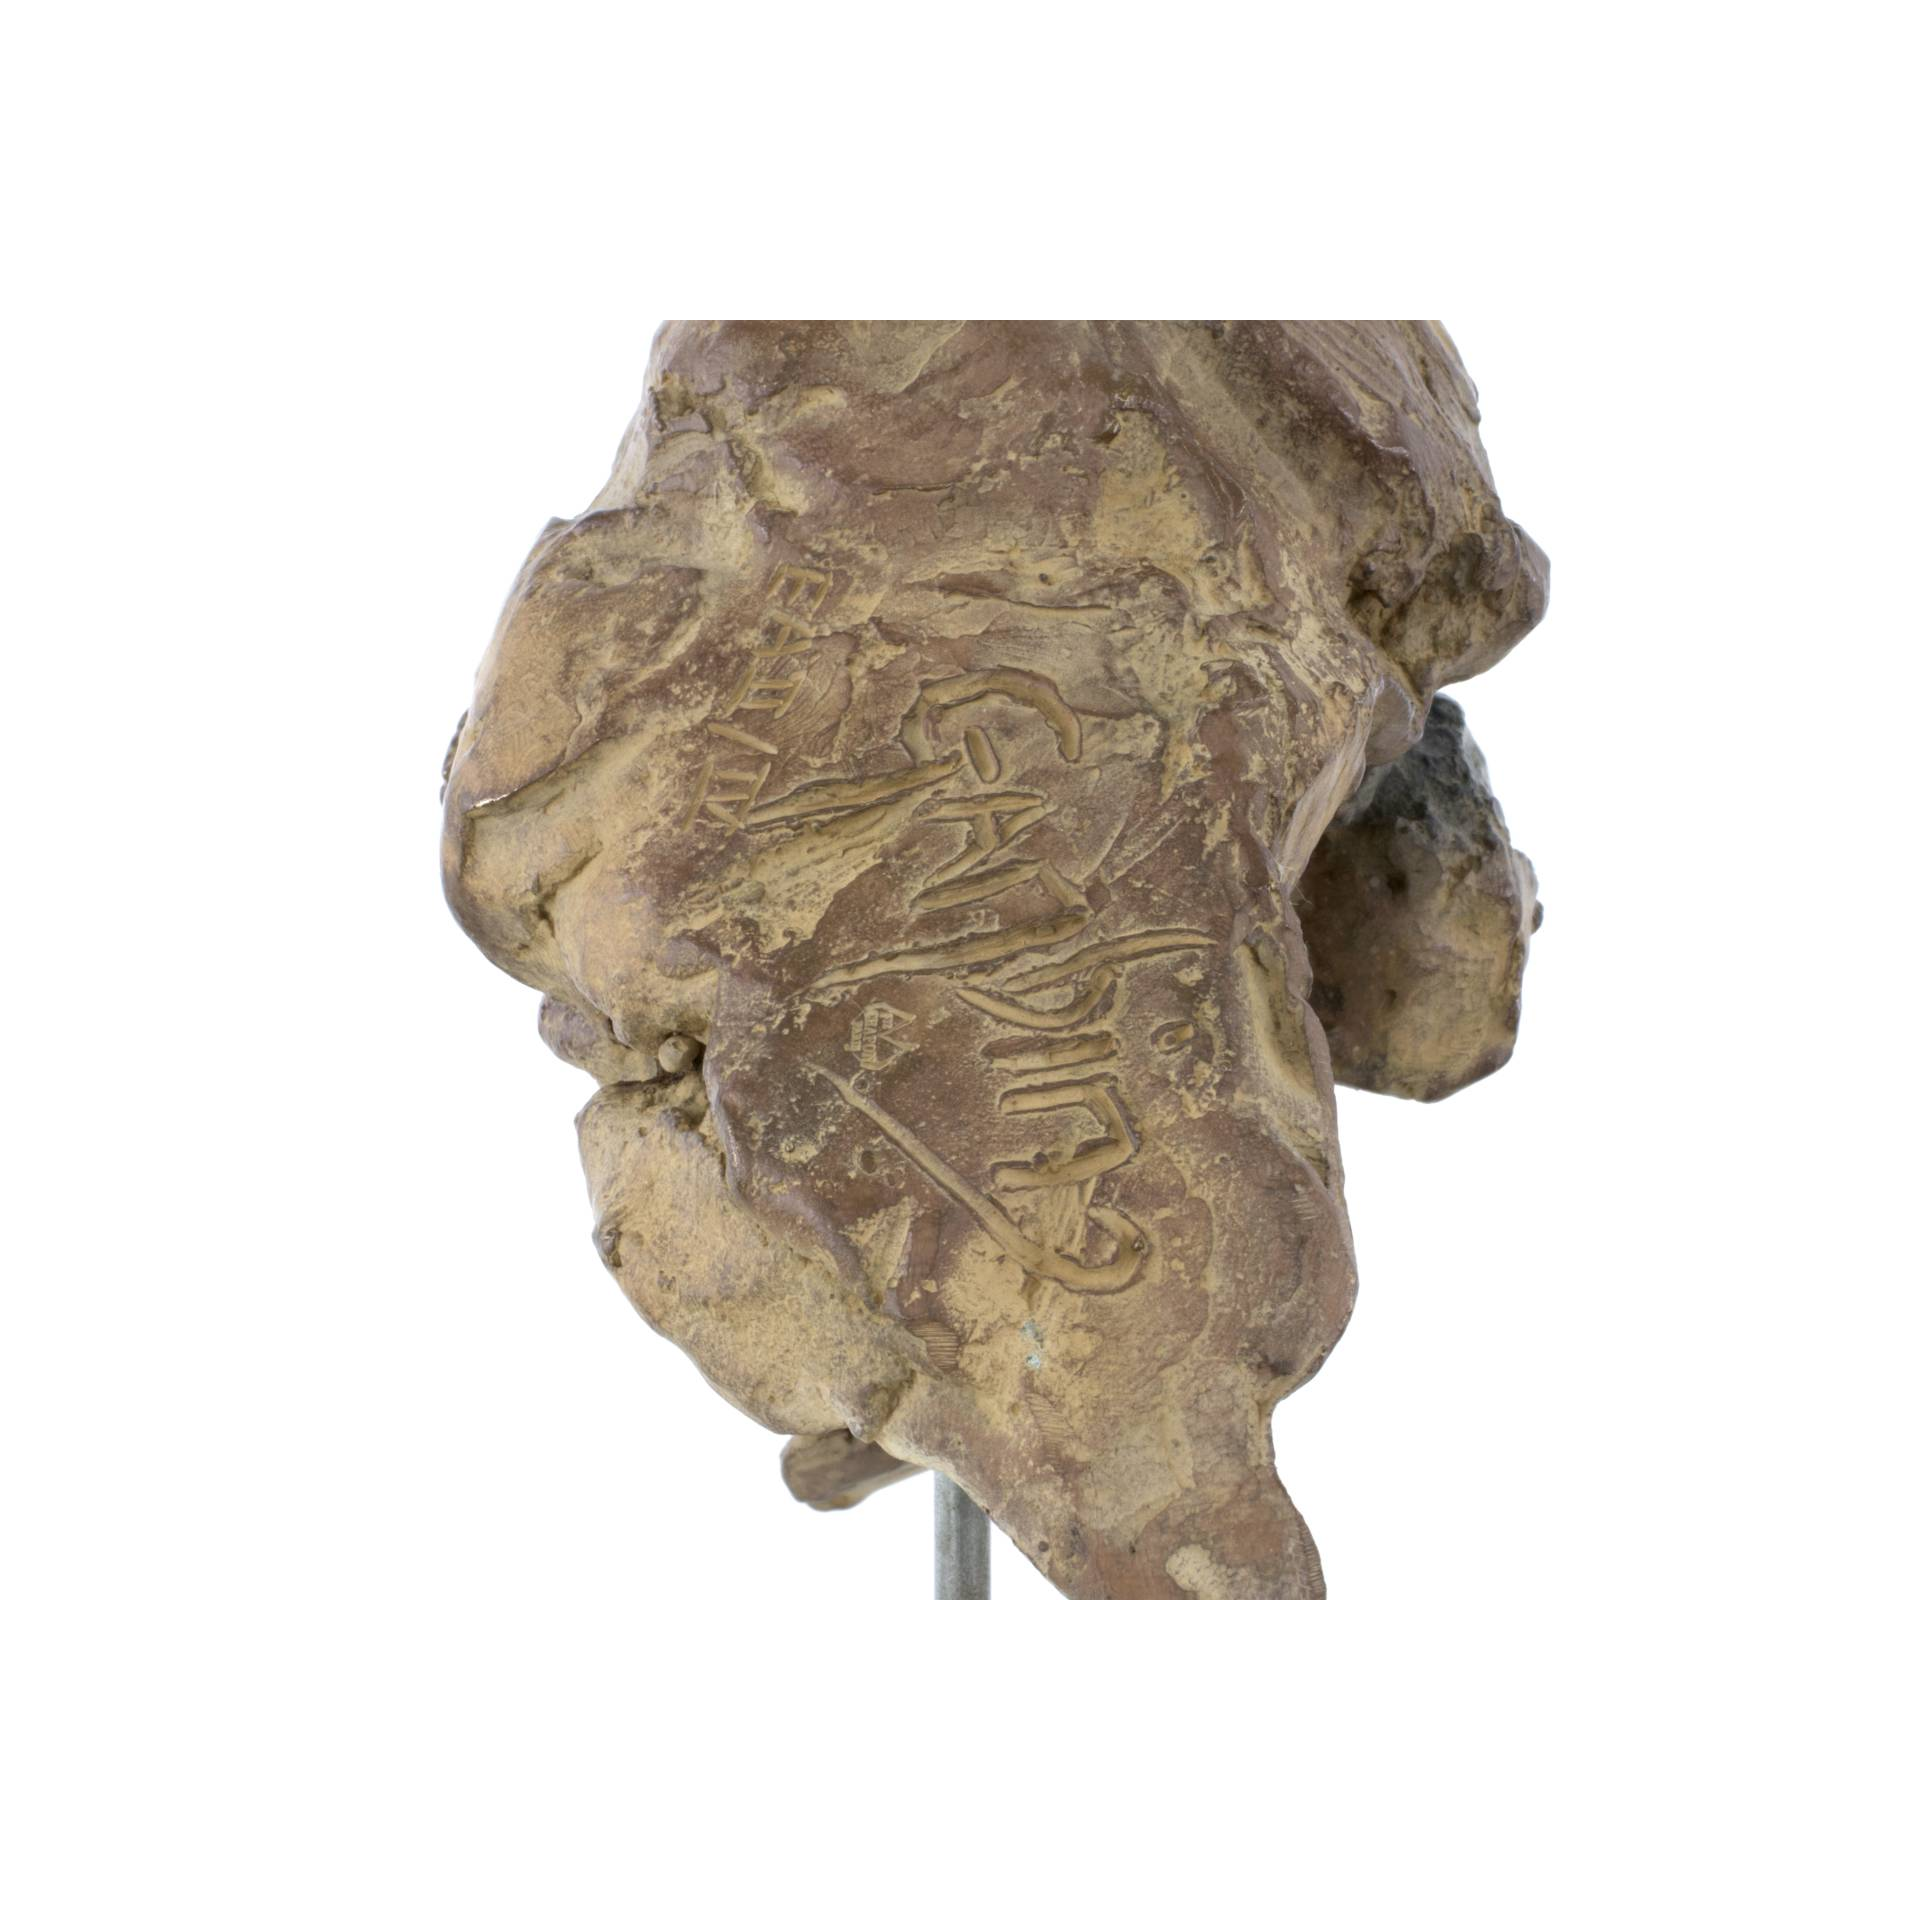 Jean-François GAMBINO - Tête de jeune orang outan - Bronze, 21 X 14 X 15 cm ( dont 9,5 cm de hauteur socle supplémentaire)